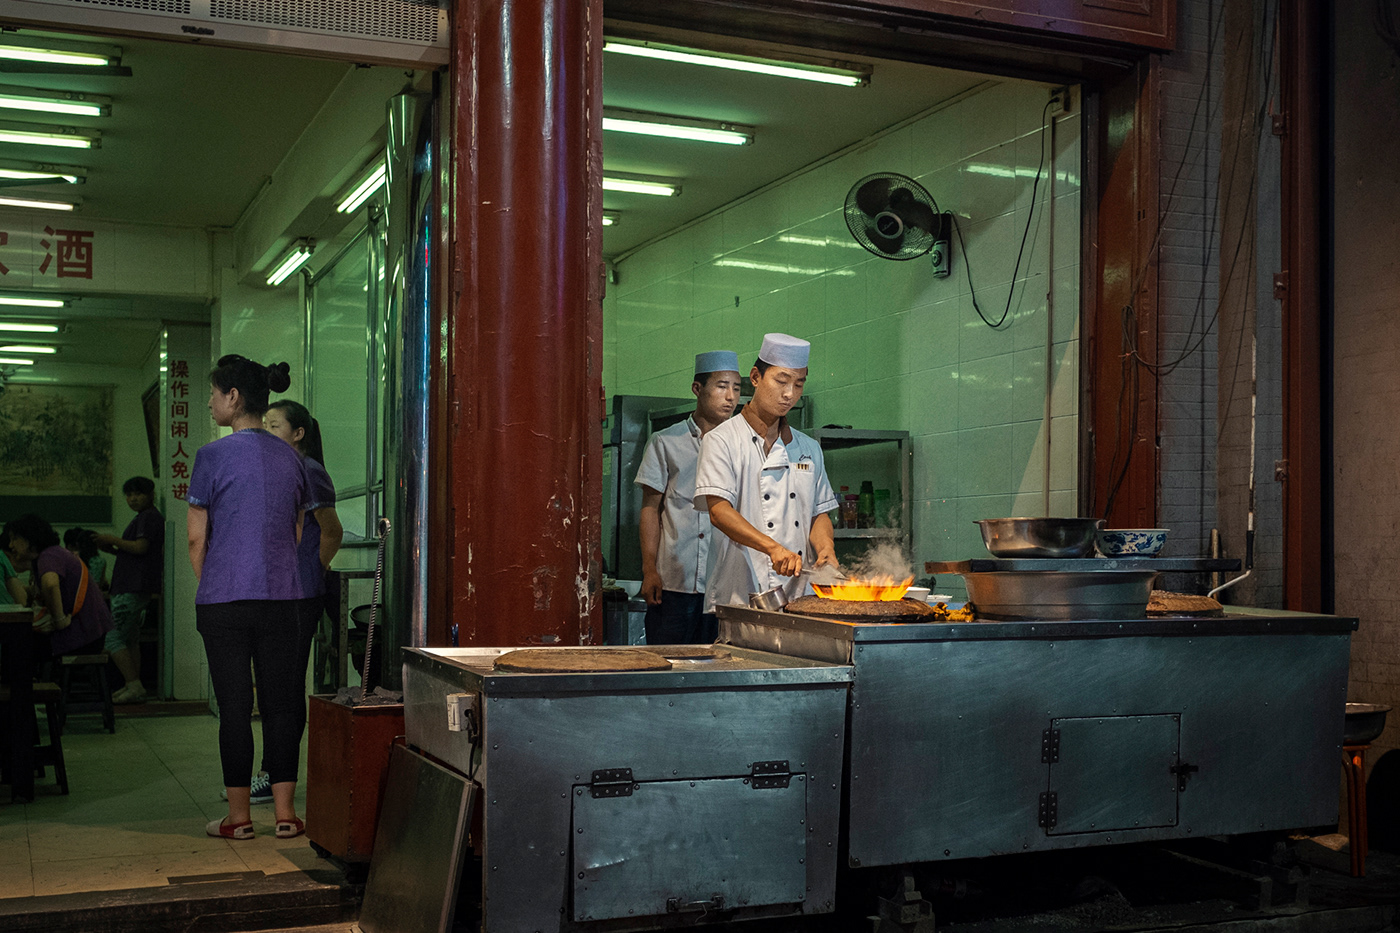 beijing china Fuzhou Hohhot shanghai Street Food street life street photography Wuhan xian